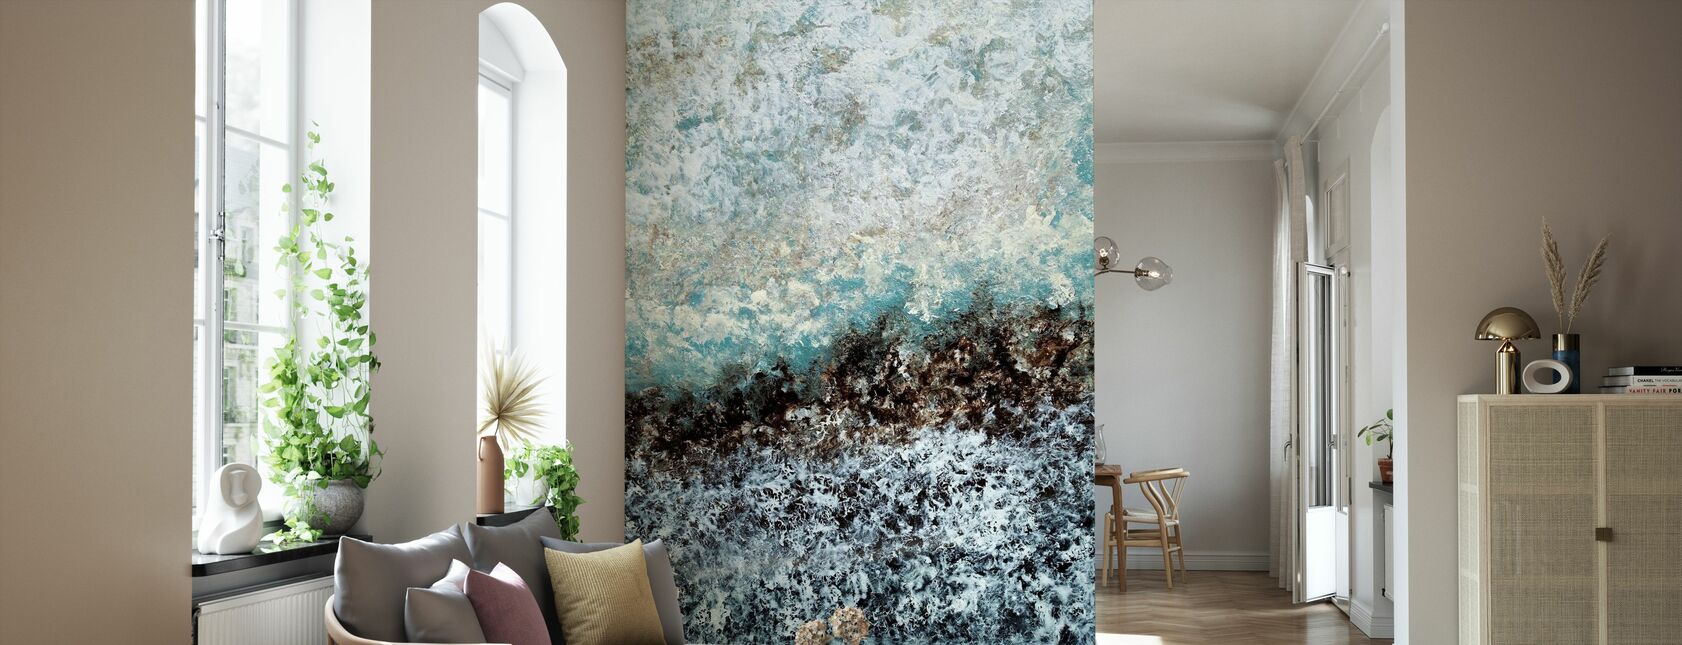 Forever Ago - Wallpaper - Living Room